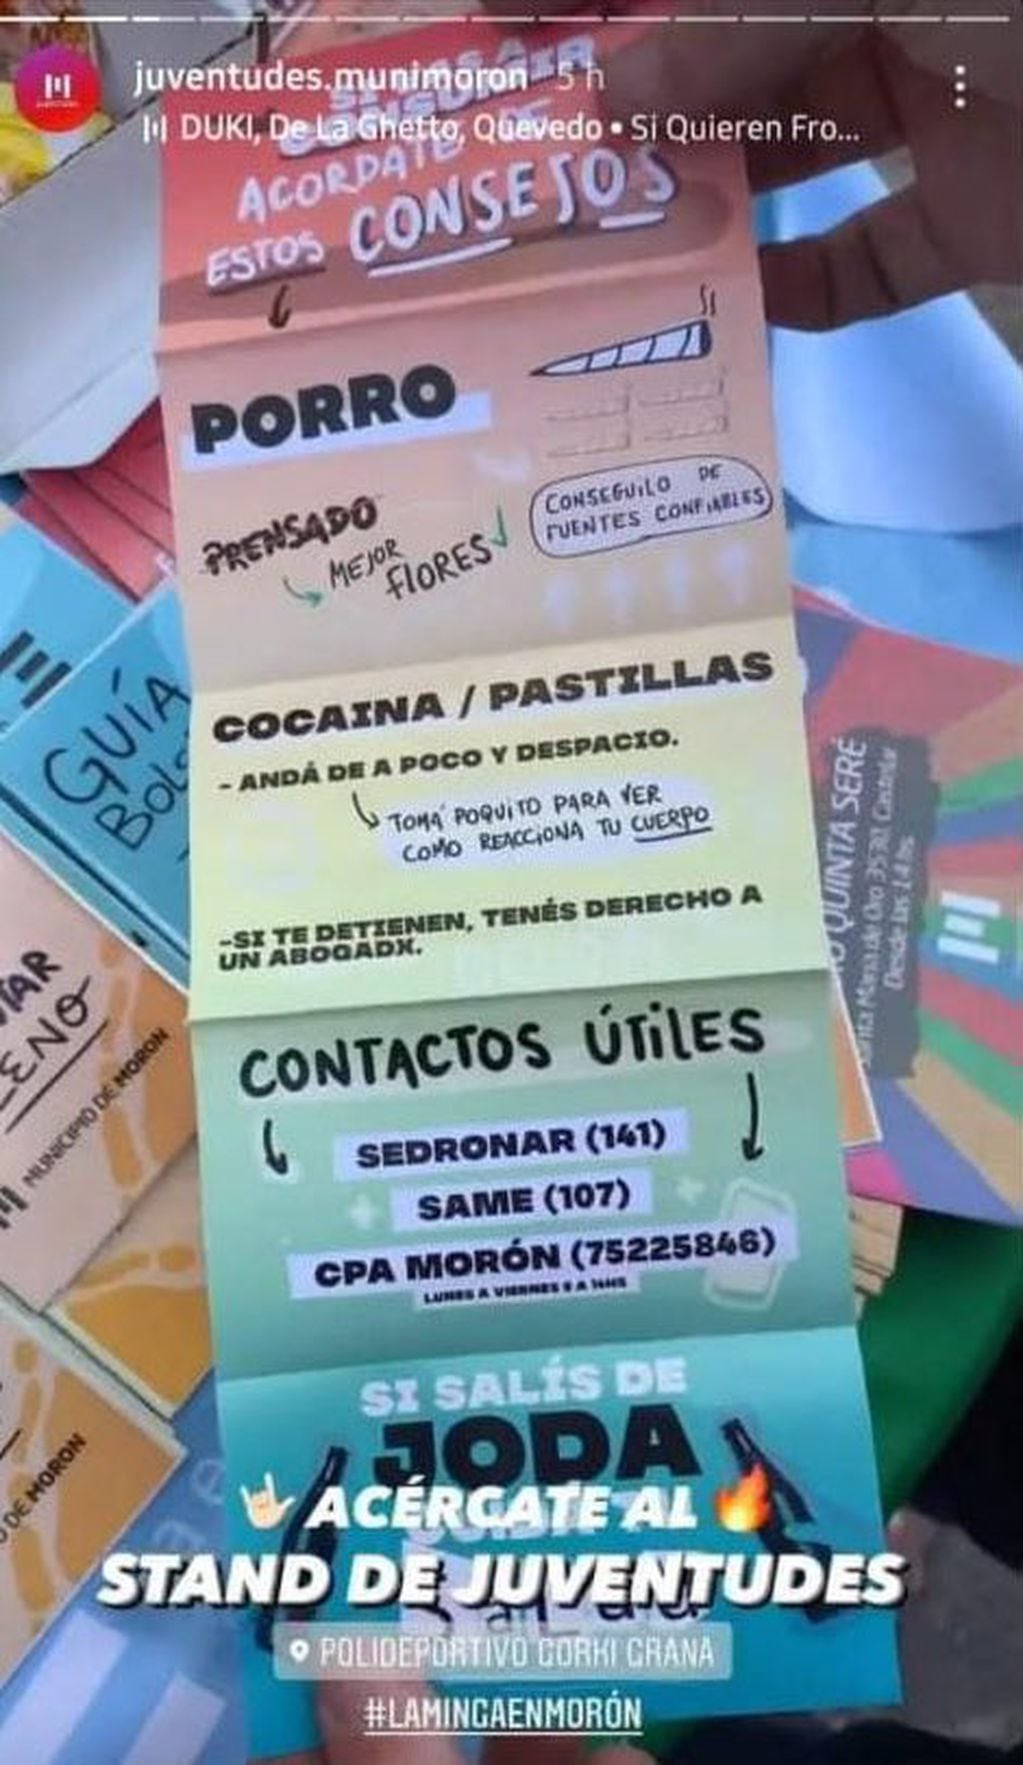 “Tomá poquita cocaína”: la insólita recomendación del Municipio de Morón a los jóvenes en un folleto. Foto: Twitter @diegosantilli